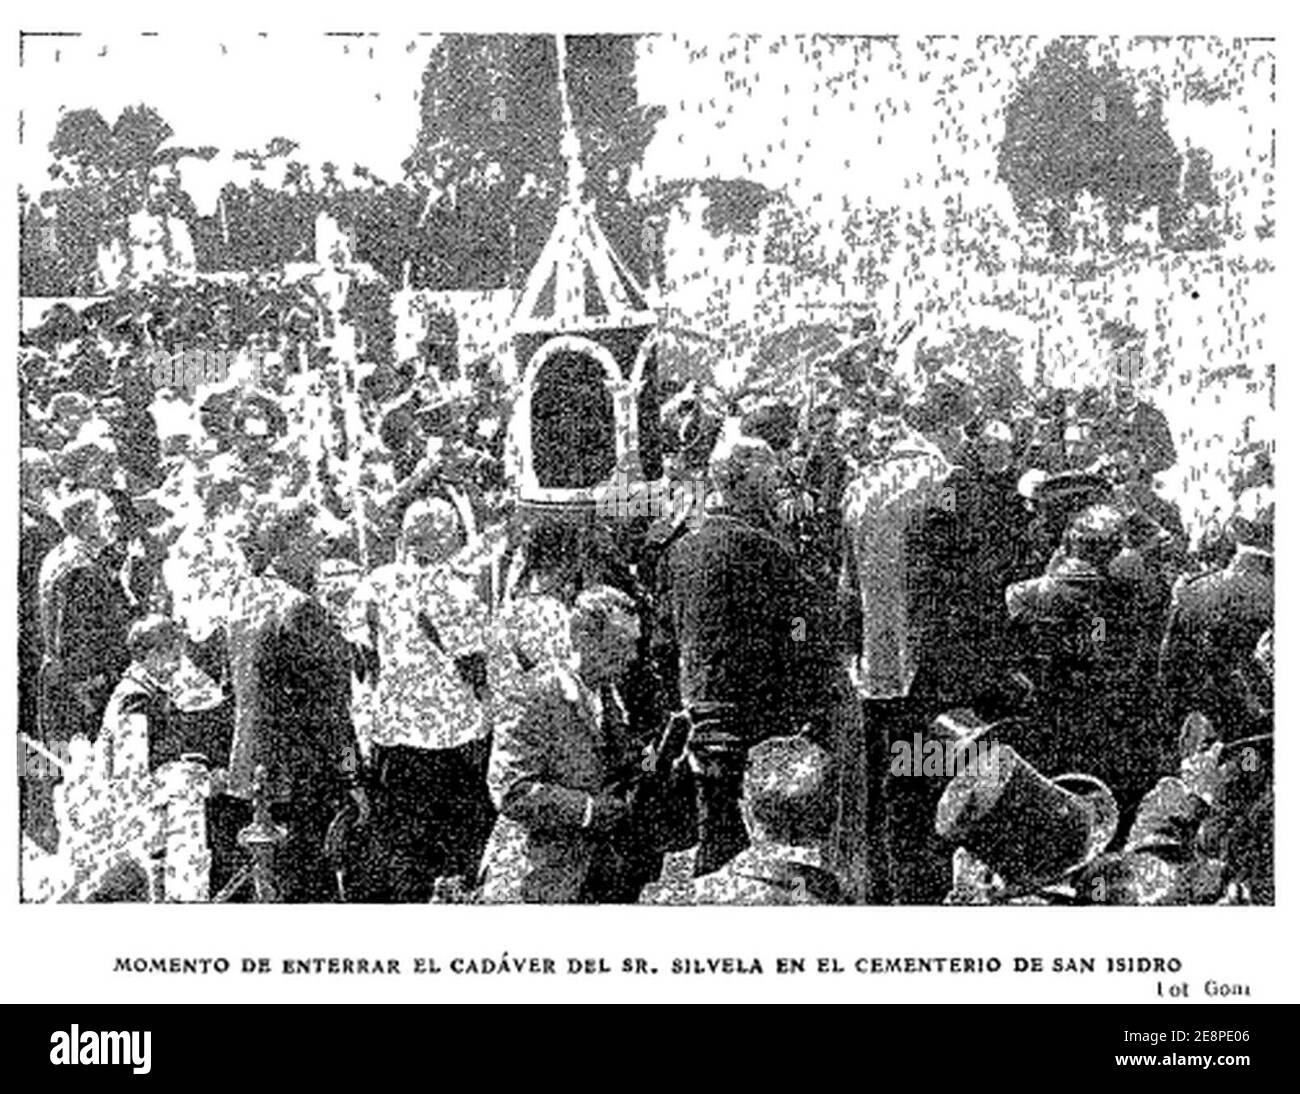 Momento de enterrar el cadáver del Sr. Silvela en el cementerio de San Isidro, foto de Goñi, ABC, 01-06-1905. Stock Photo